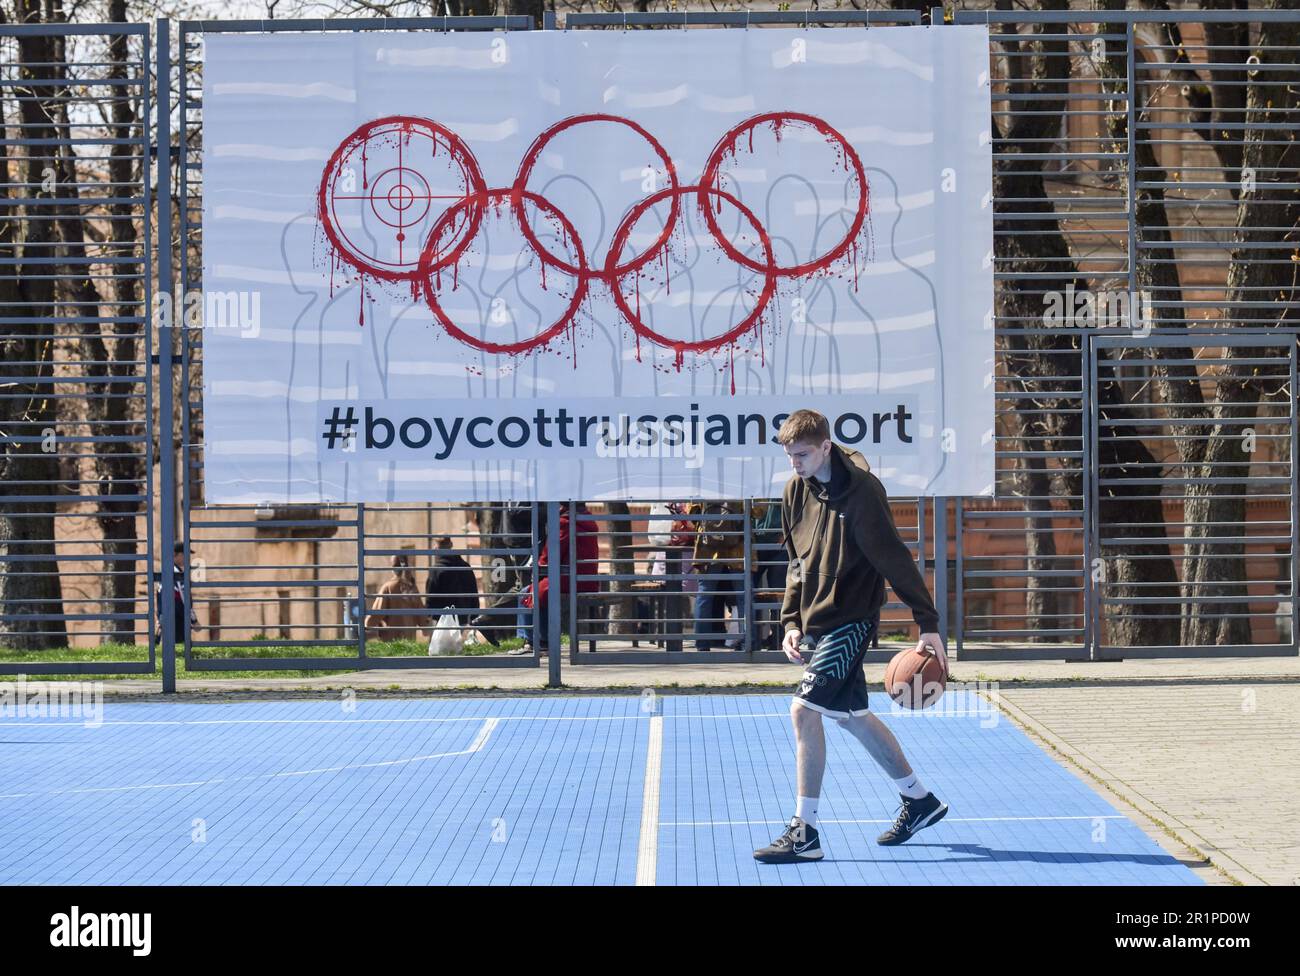 Eine Person spielt Basketball vor dem Hintergrund eines Banners mit der Inschrift #BoycottRussianSport auf einem der Sportplätze in Lemberg. Die Ukraine und viele Länder auf der ganzen Welt fordern, dass russische Athleten wegen des von Russland ausgelösten russisch-ukrainischen Krieges von den Olympischen Spielen und anderen internationalen Wettkämpfen ausgeschlossen werden. Viele ukrainische Athleten, die die Ukraine vor dem russischen Aggressor verteidigten, sind bereits in diesem Krieg gestorben. Zur Unterstützung des Boykotts wurde ein Banner mit der Aufschrift #BoycottRussianSport auf einem der Sportplätze in Lemberg aufgehängt. Stockfoto